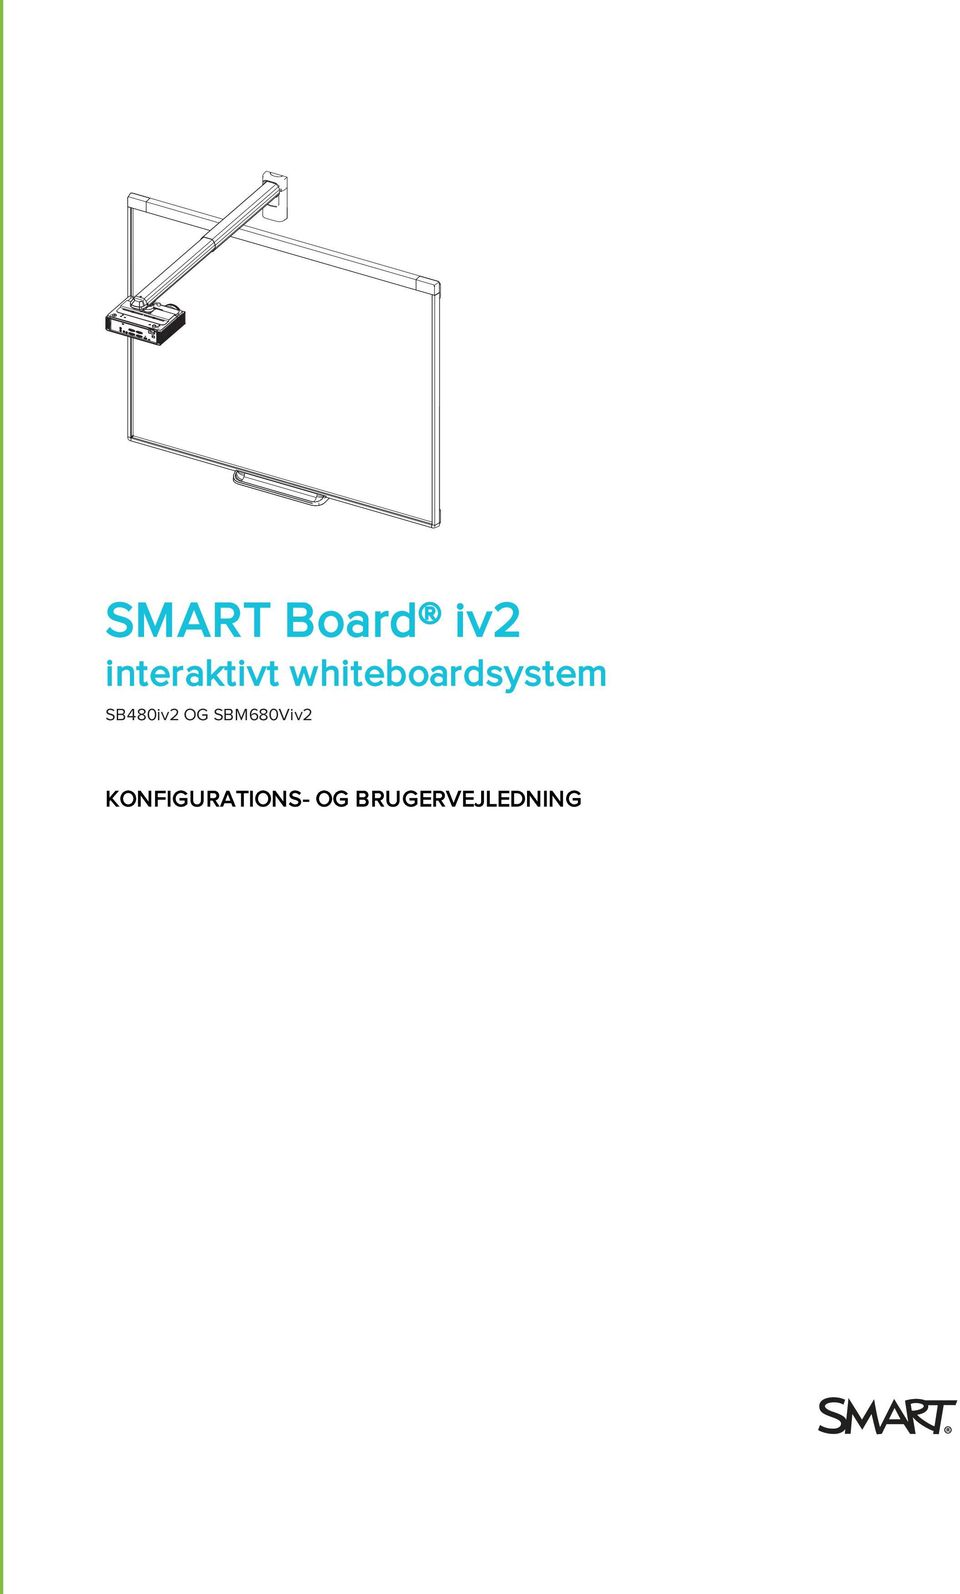 whiteboardsystem SB480iv2